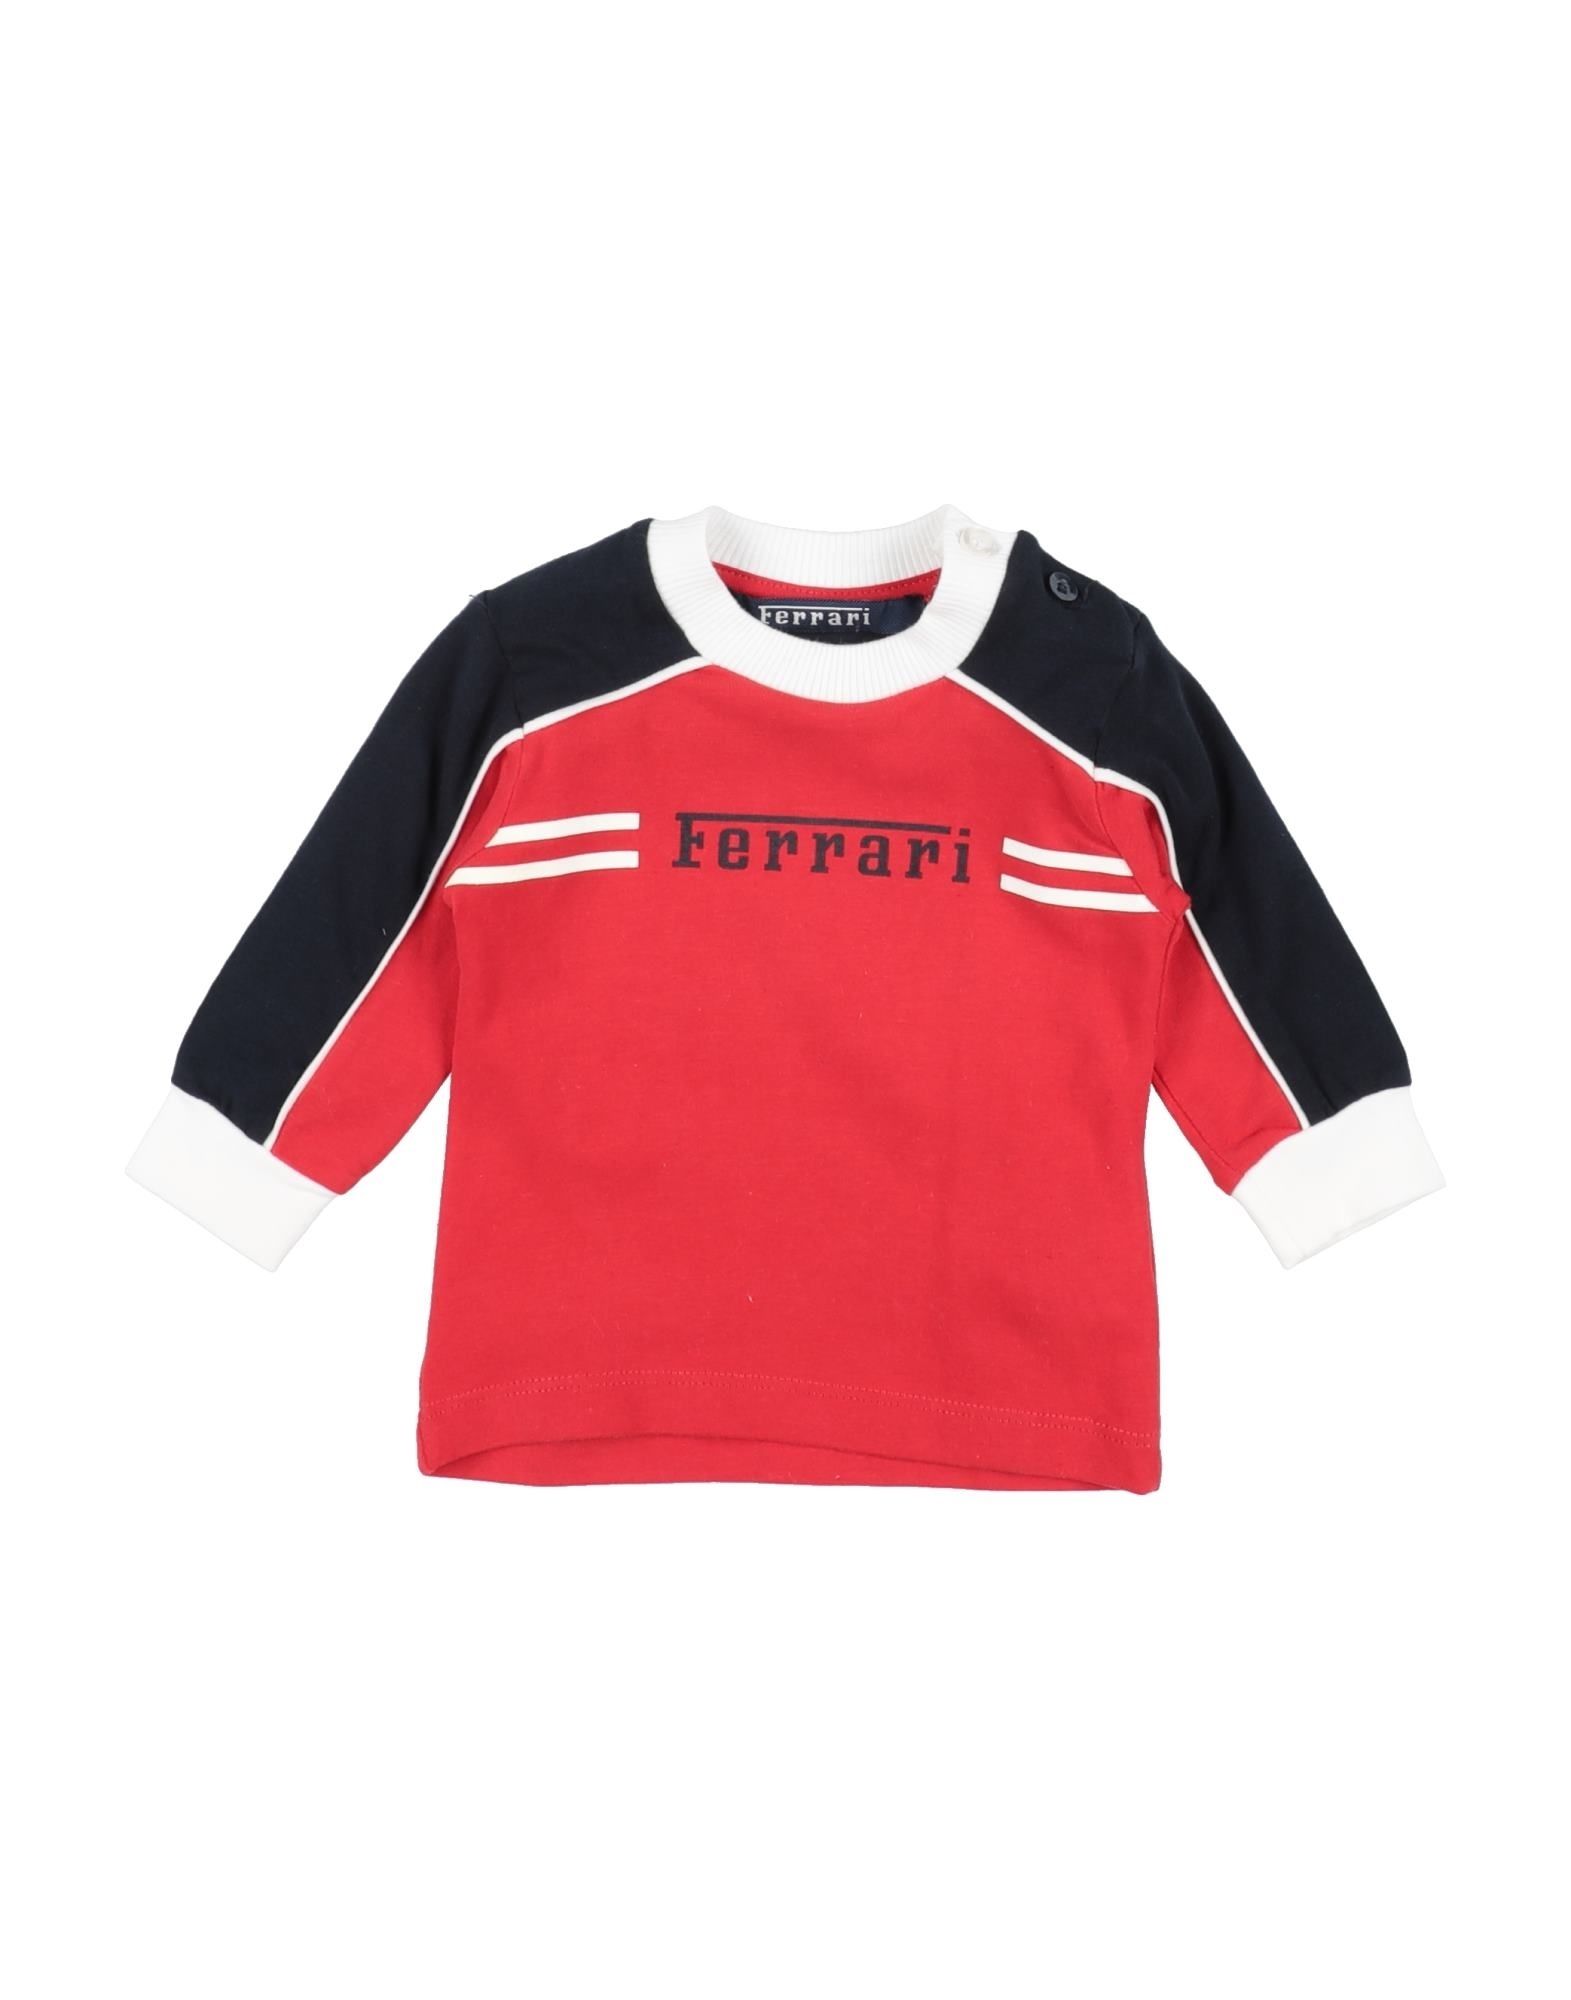 Ferrari Kids' T-shirts In Red